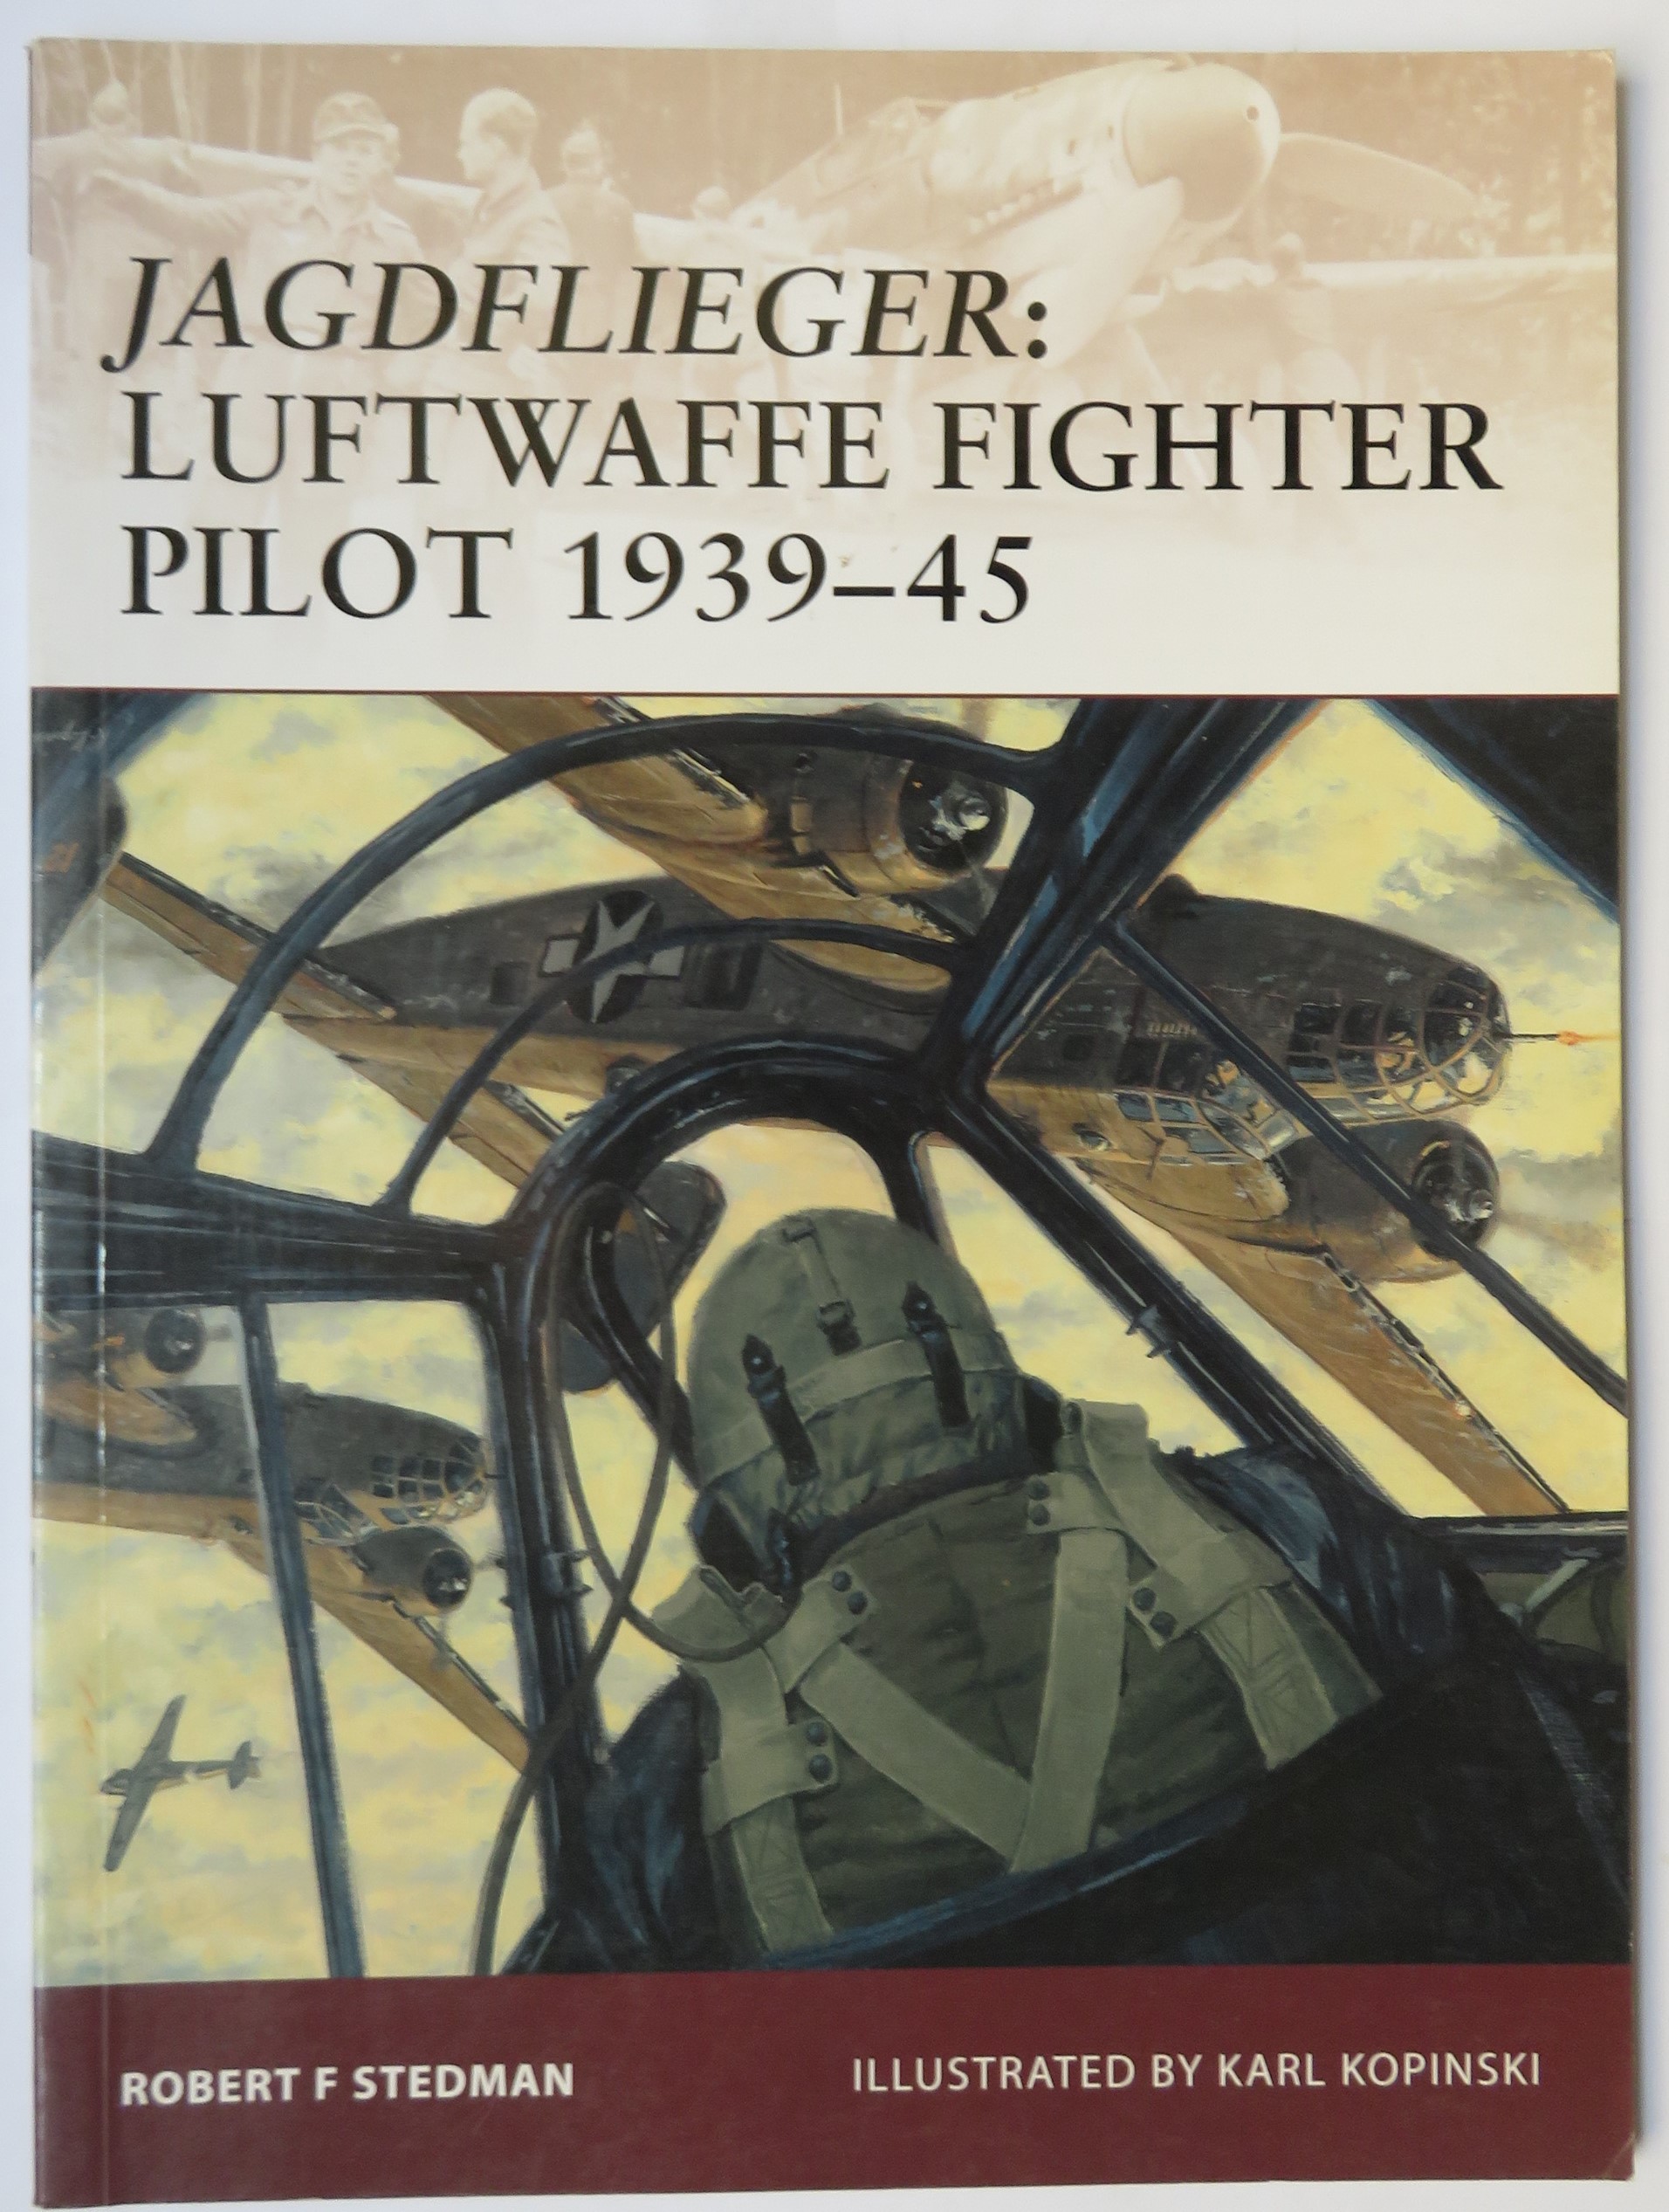 Warrior 122 Jagdflieger Luftwaffe Fighter Pilot 1939-45